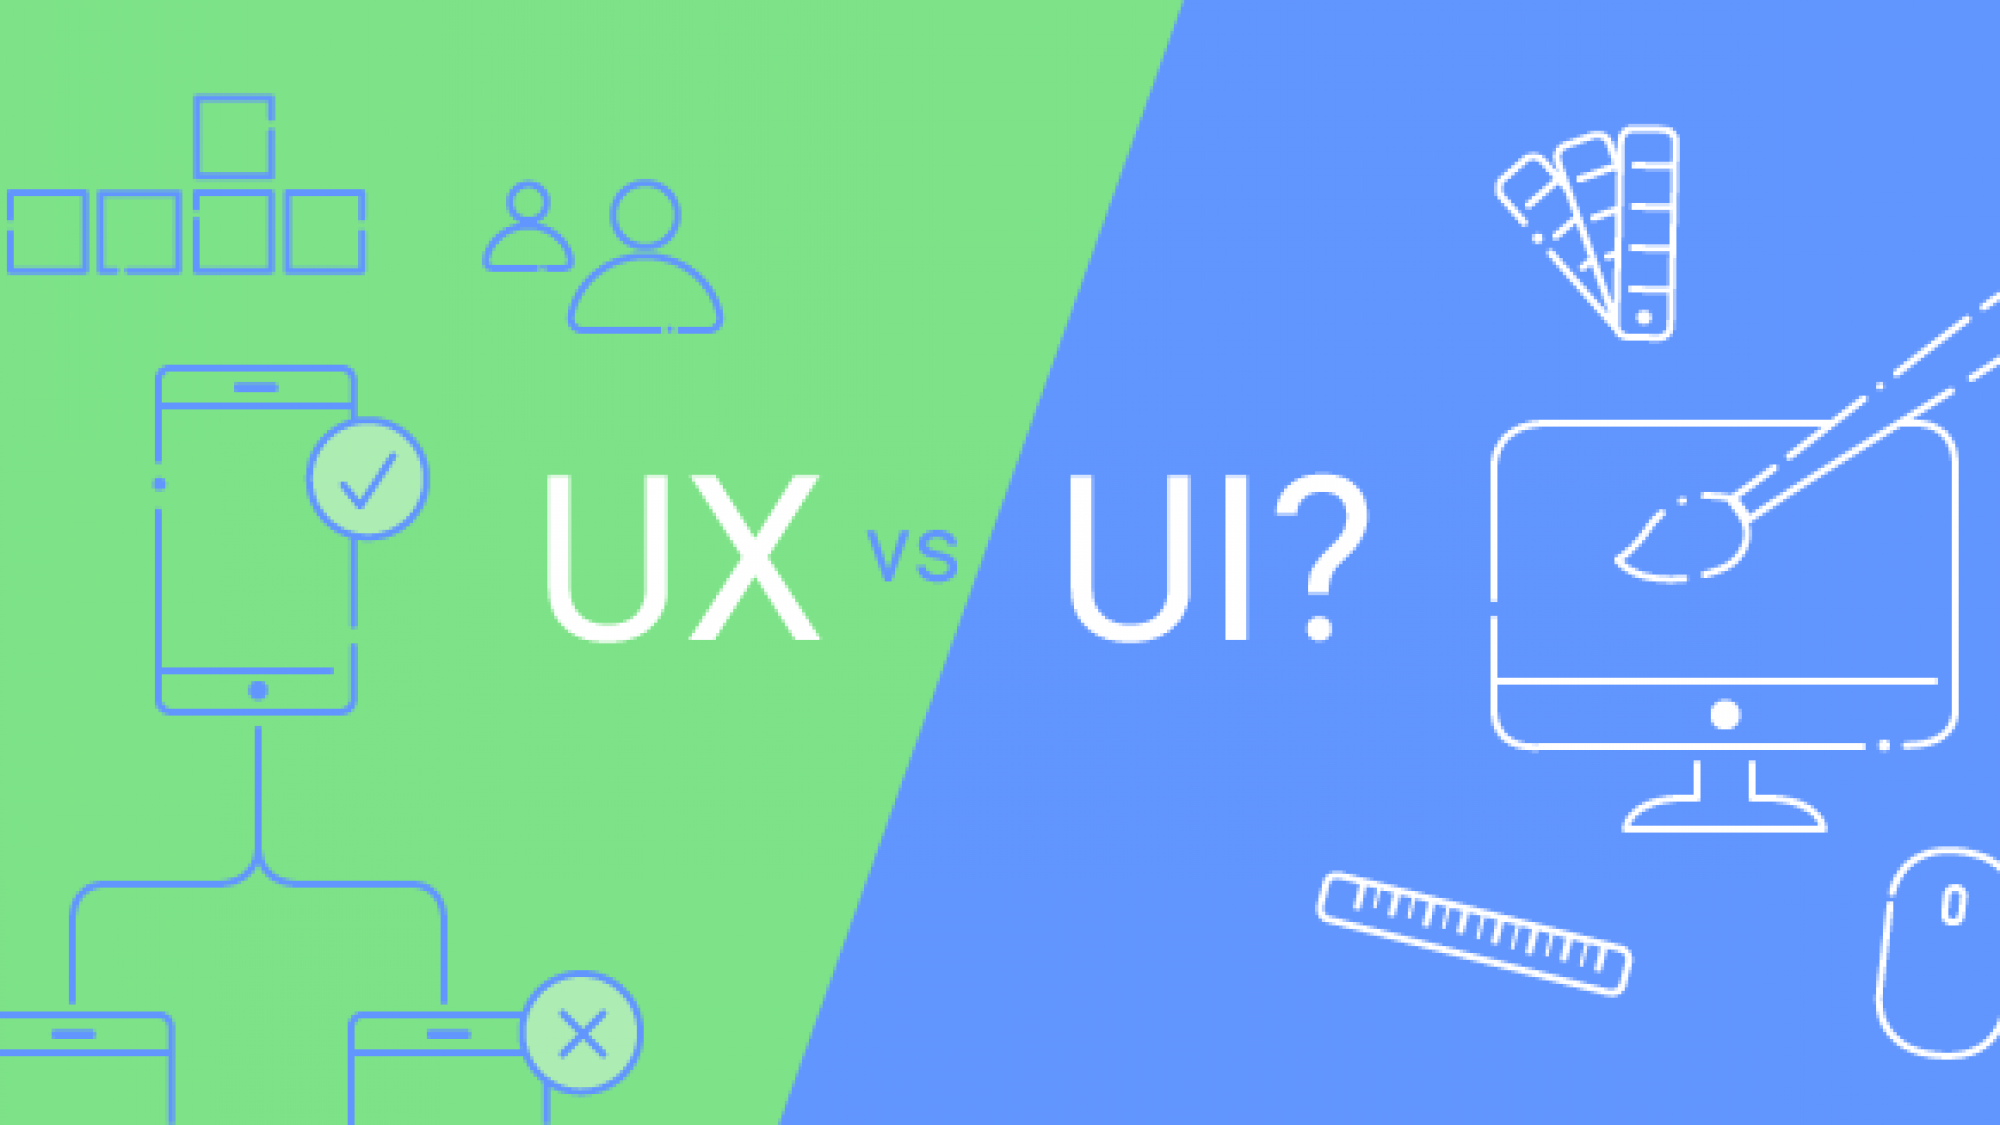 UX e UI: conheça as semelhanças e diferenças entre ambos